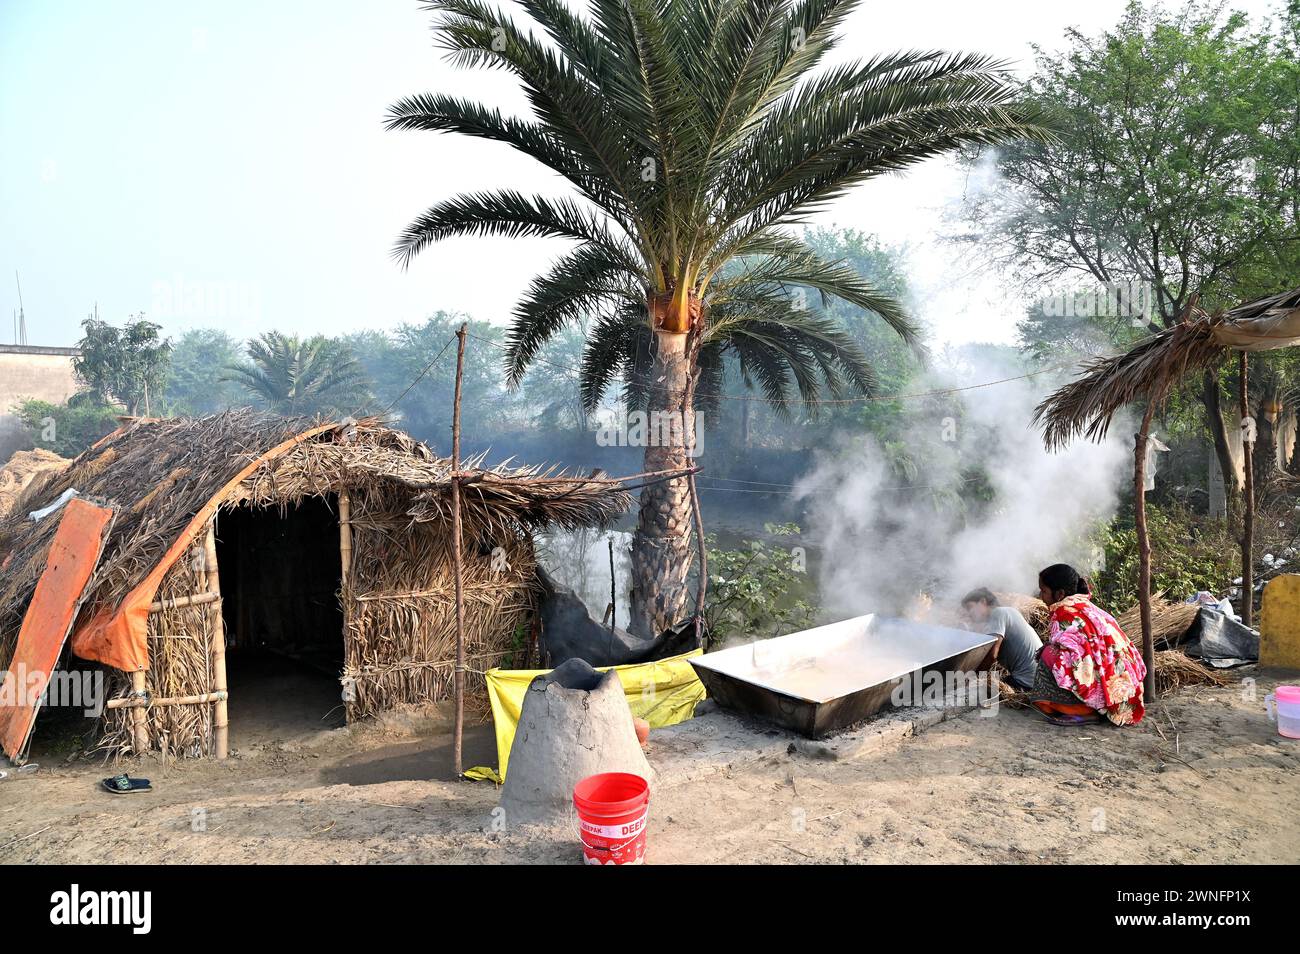 Datteri, jiggery di palme o khajoor gur, è una popolare prelibatezza invernale bengalese, fa bollire la linfa della palma da dattero per preparare il jiggery nel remoto villaggio. Foto Stock